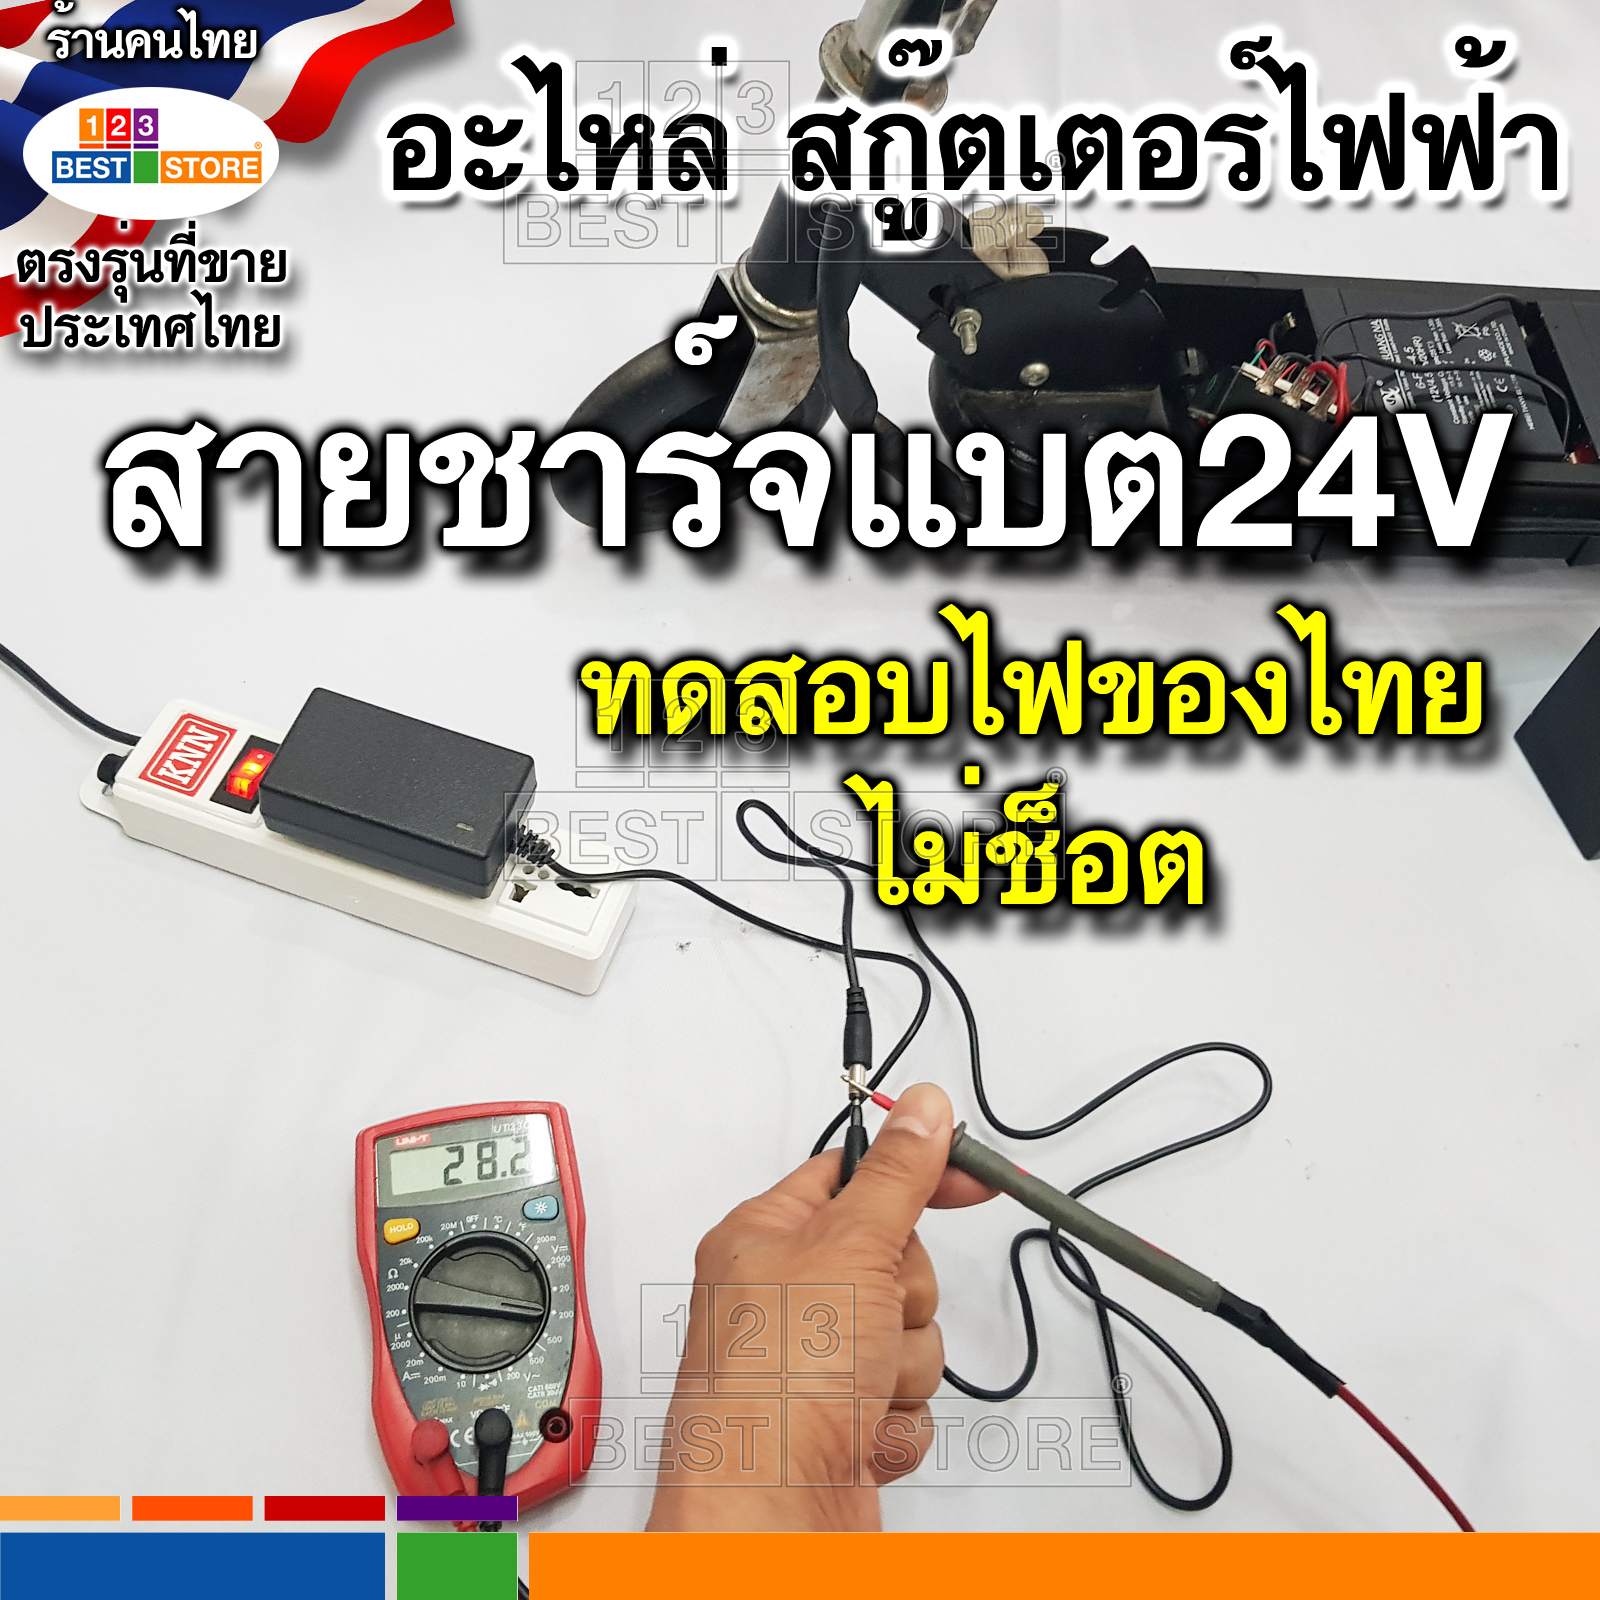 รายละเอียดเพิ่มเติมเกี่ยวกับ อะไหล่ตรงรุ่นของไทย สกู๊ตเตอร์ไฟฟ้า มอเตอร์24V สายชาร์จไฟ24V แบตเตอรี่12V4.5Ah กล่องควบคุม ล้อหน้า ล้อหลัง คันเร่ง เบรคมือ สายพาน384-3M-12 390-3M-12